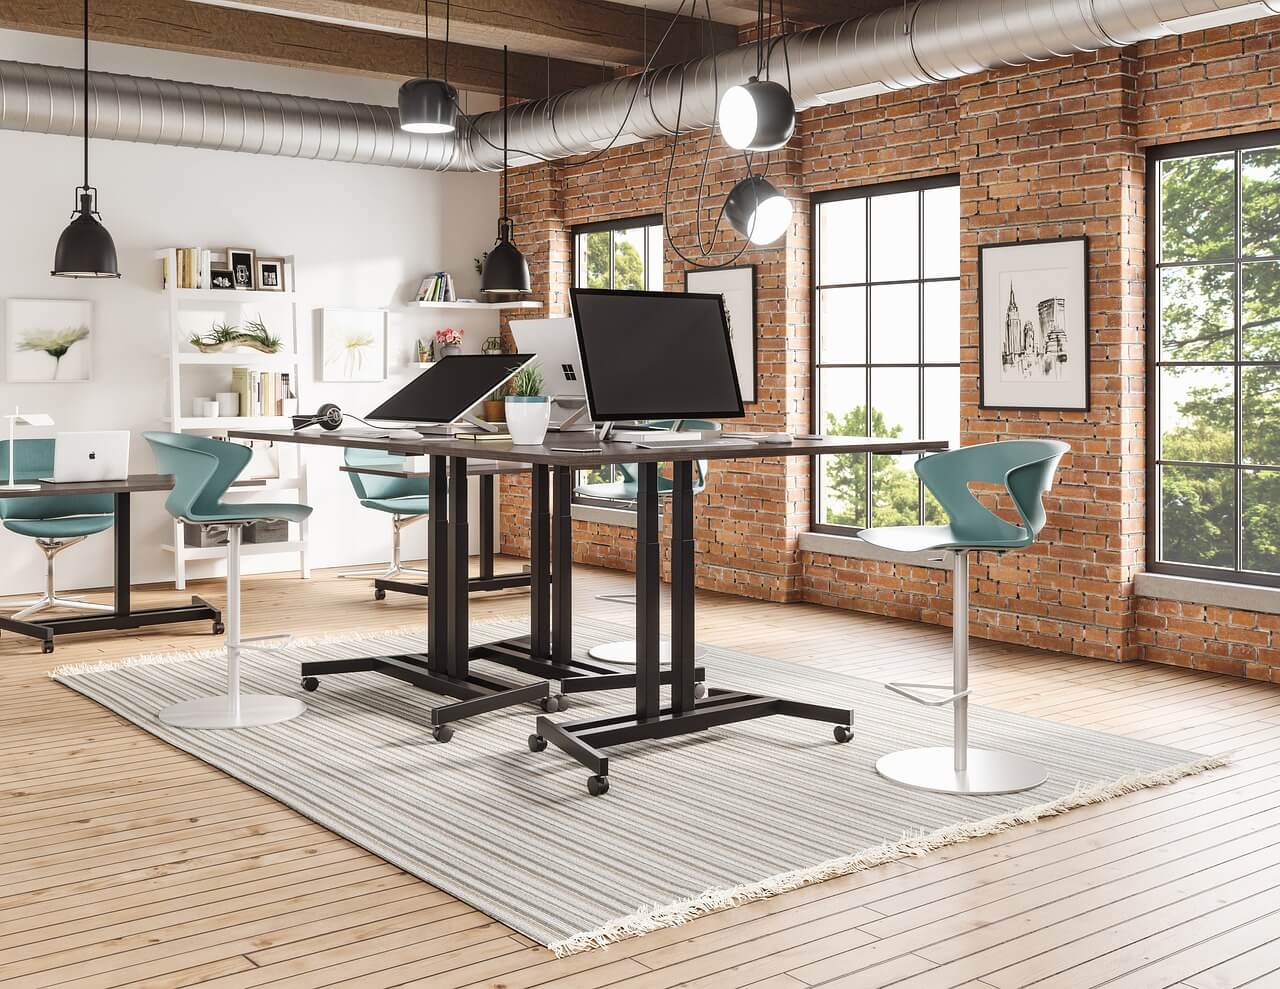 Comment choisir votre mobilier de bureau ergonomique